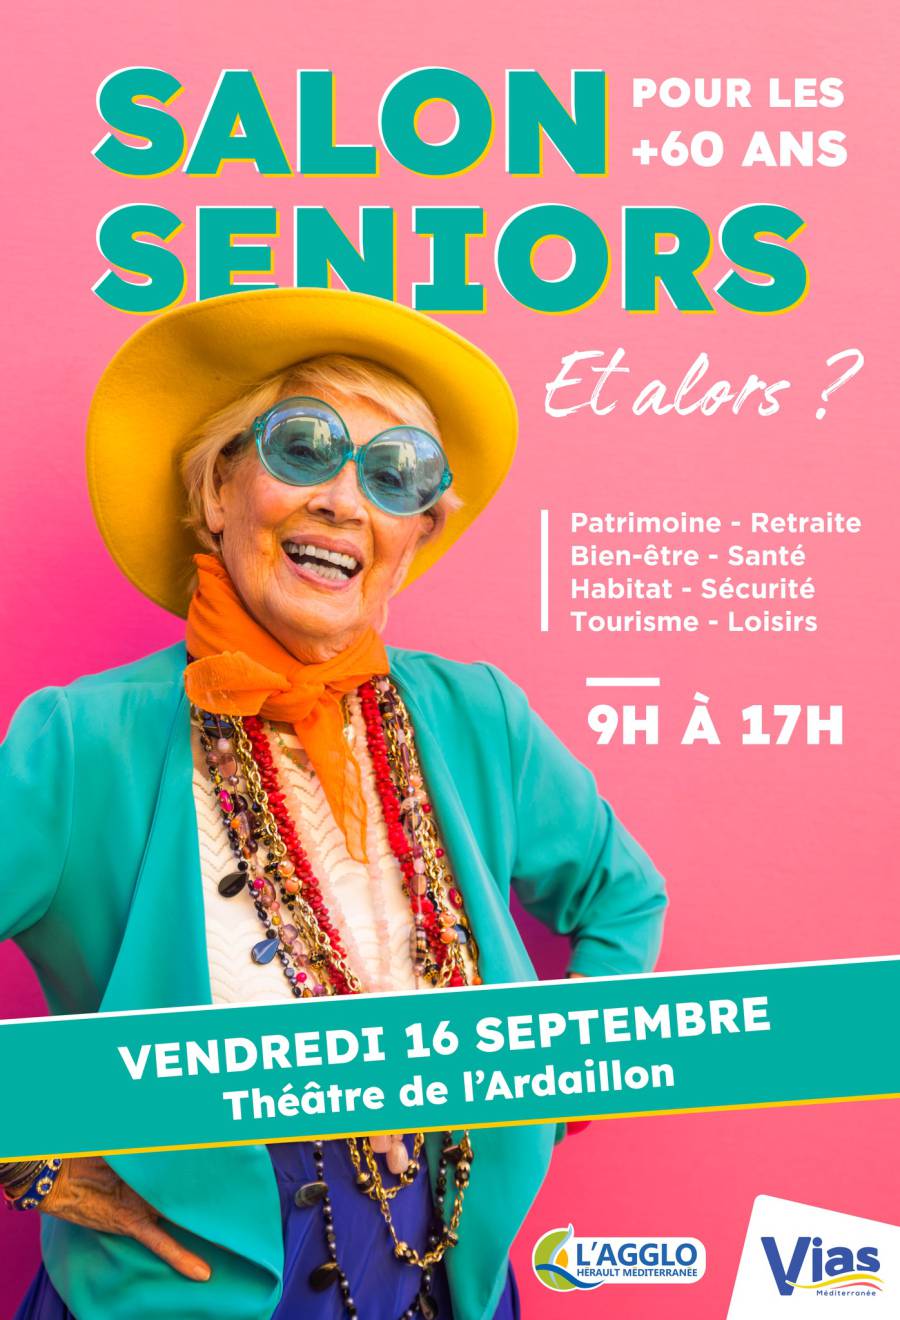 Vias - Le 16 septembre venez découvrir le  Salon Séniors  à l'Ardaillon !